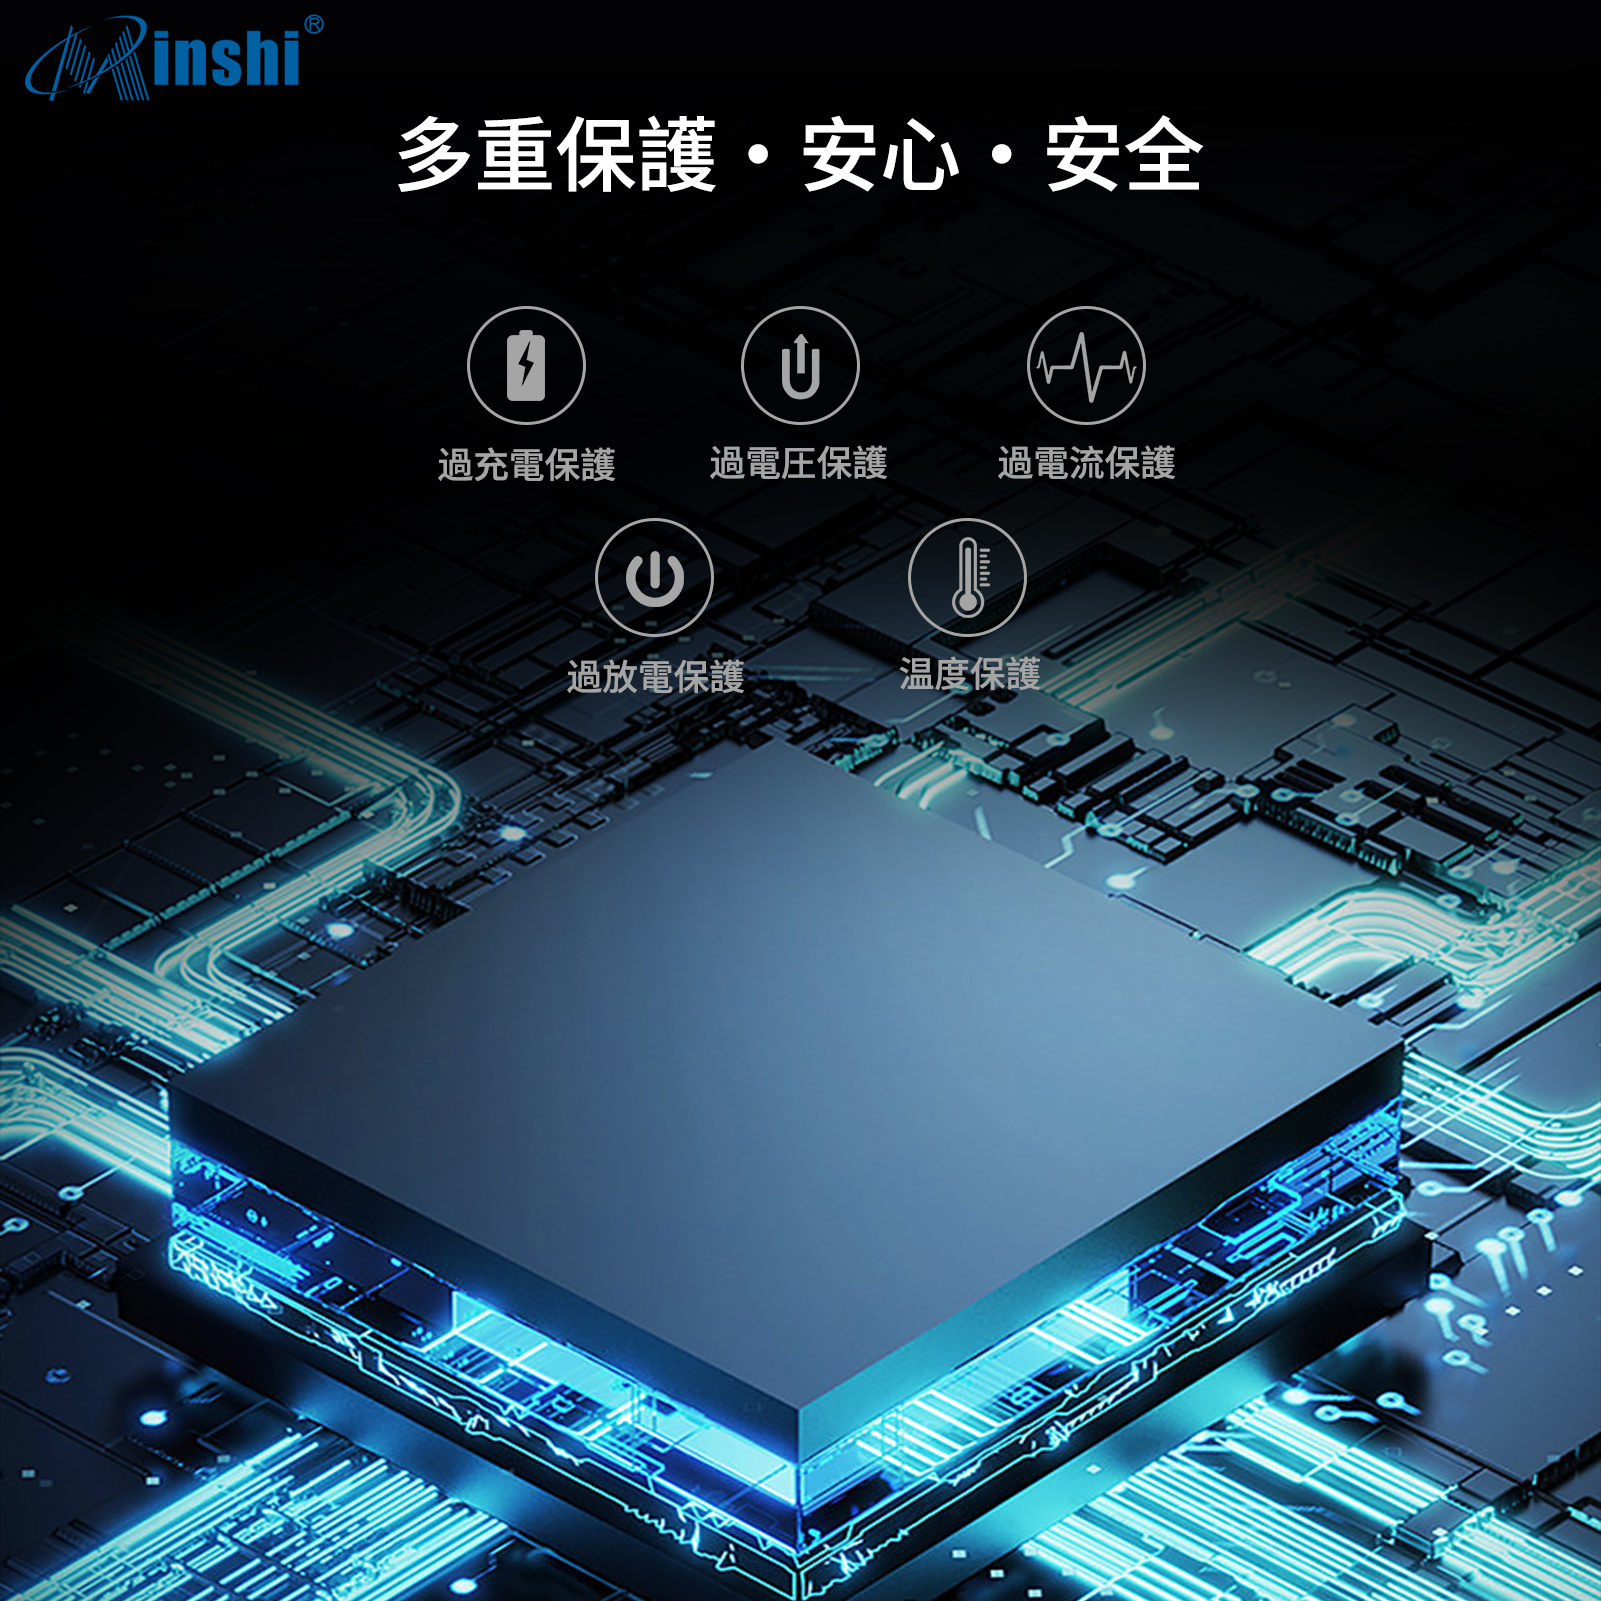 直営 【２個セット】 minshi VICTOR GZ-E320 BN-VG121 対応 互換バッテリー 1400mAh 高品質交換用バッテリー